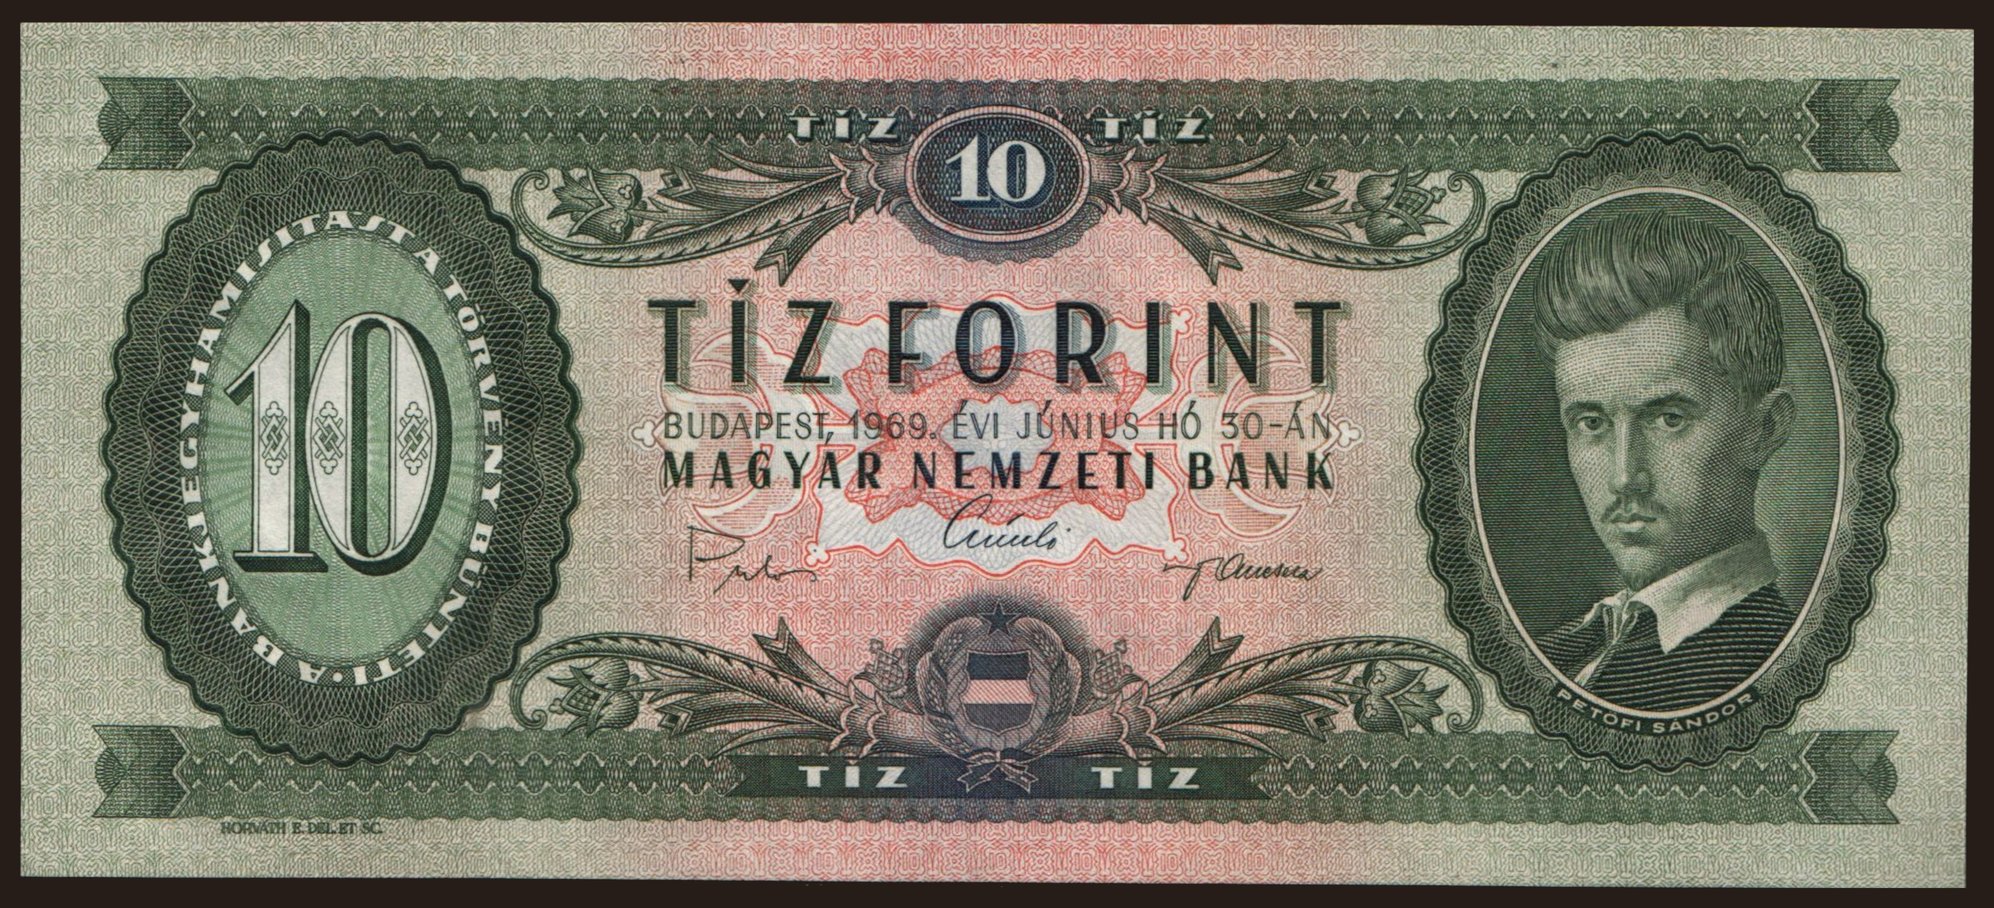 10 forint, 1969